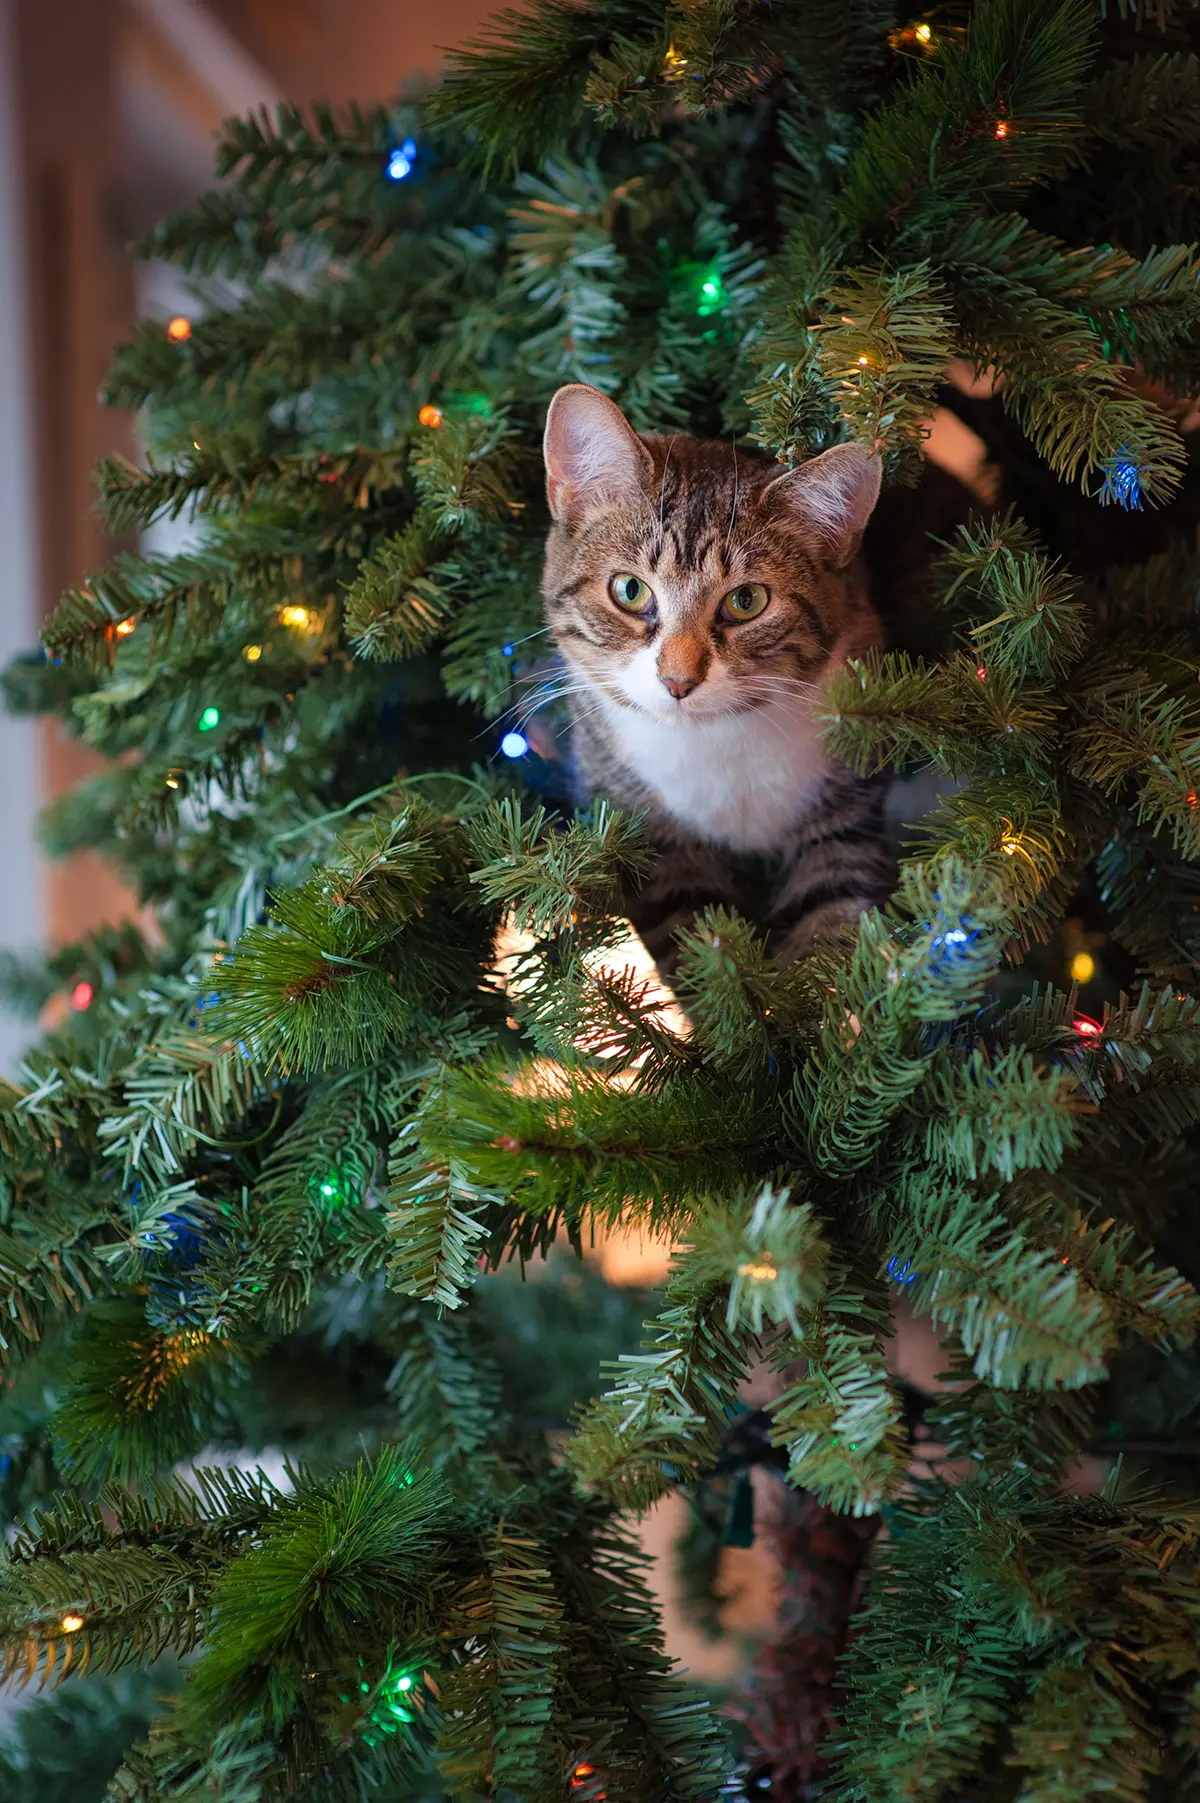 كيف تبعد القطة عن شجرة عيد الميلاد؟